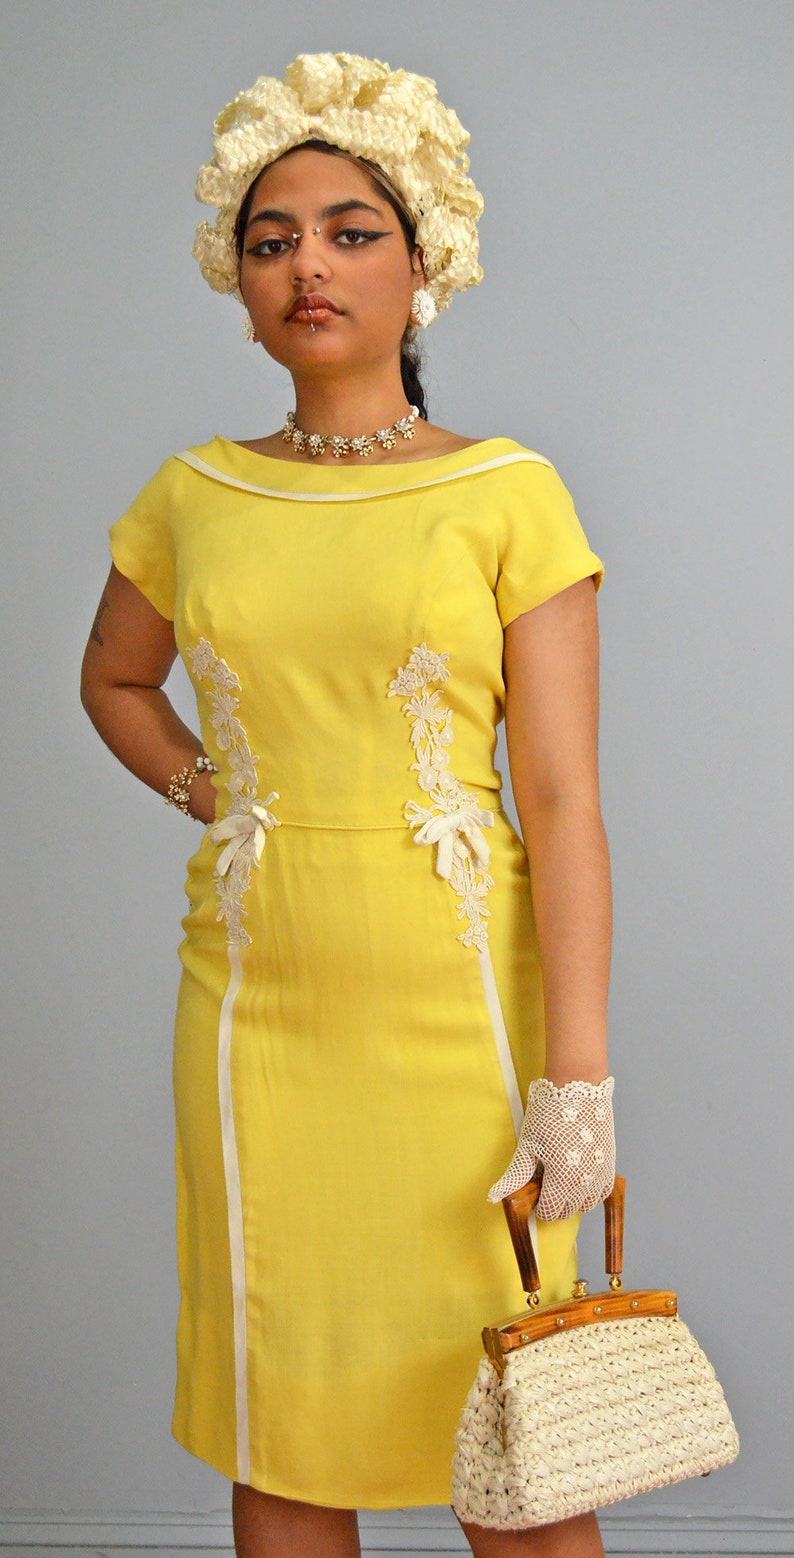 Peggy Hunt Linen Sheath XS S Vintage 1960s Lemon Yellow Dress Venise Lace & Bow Details image 4